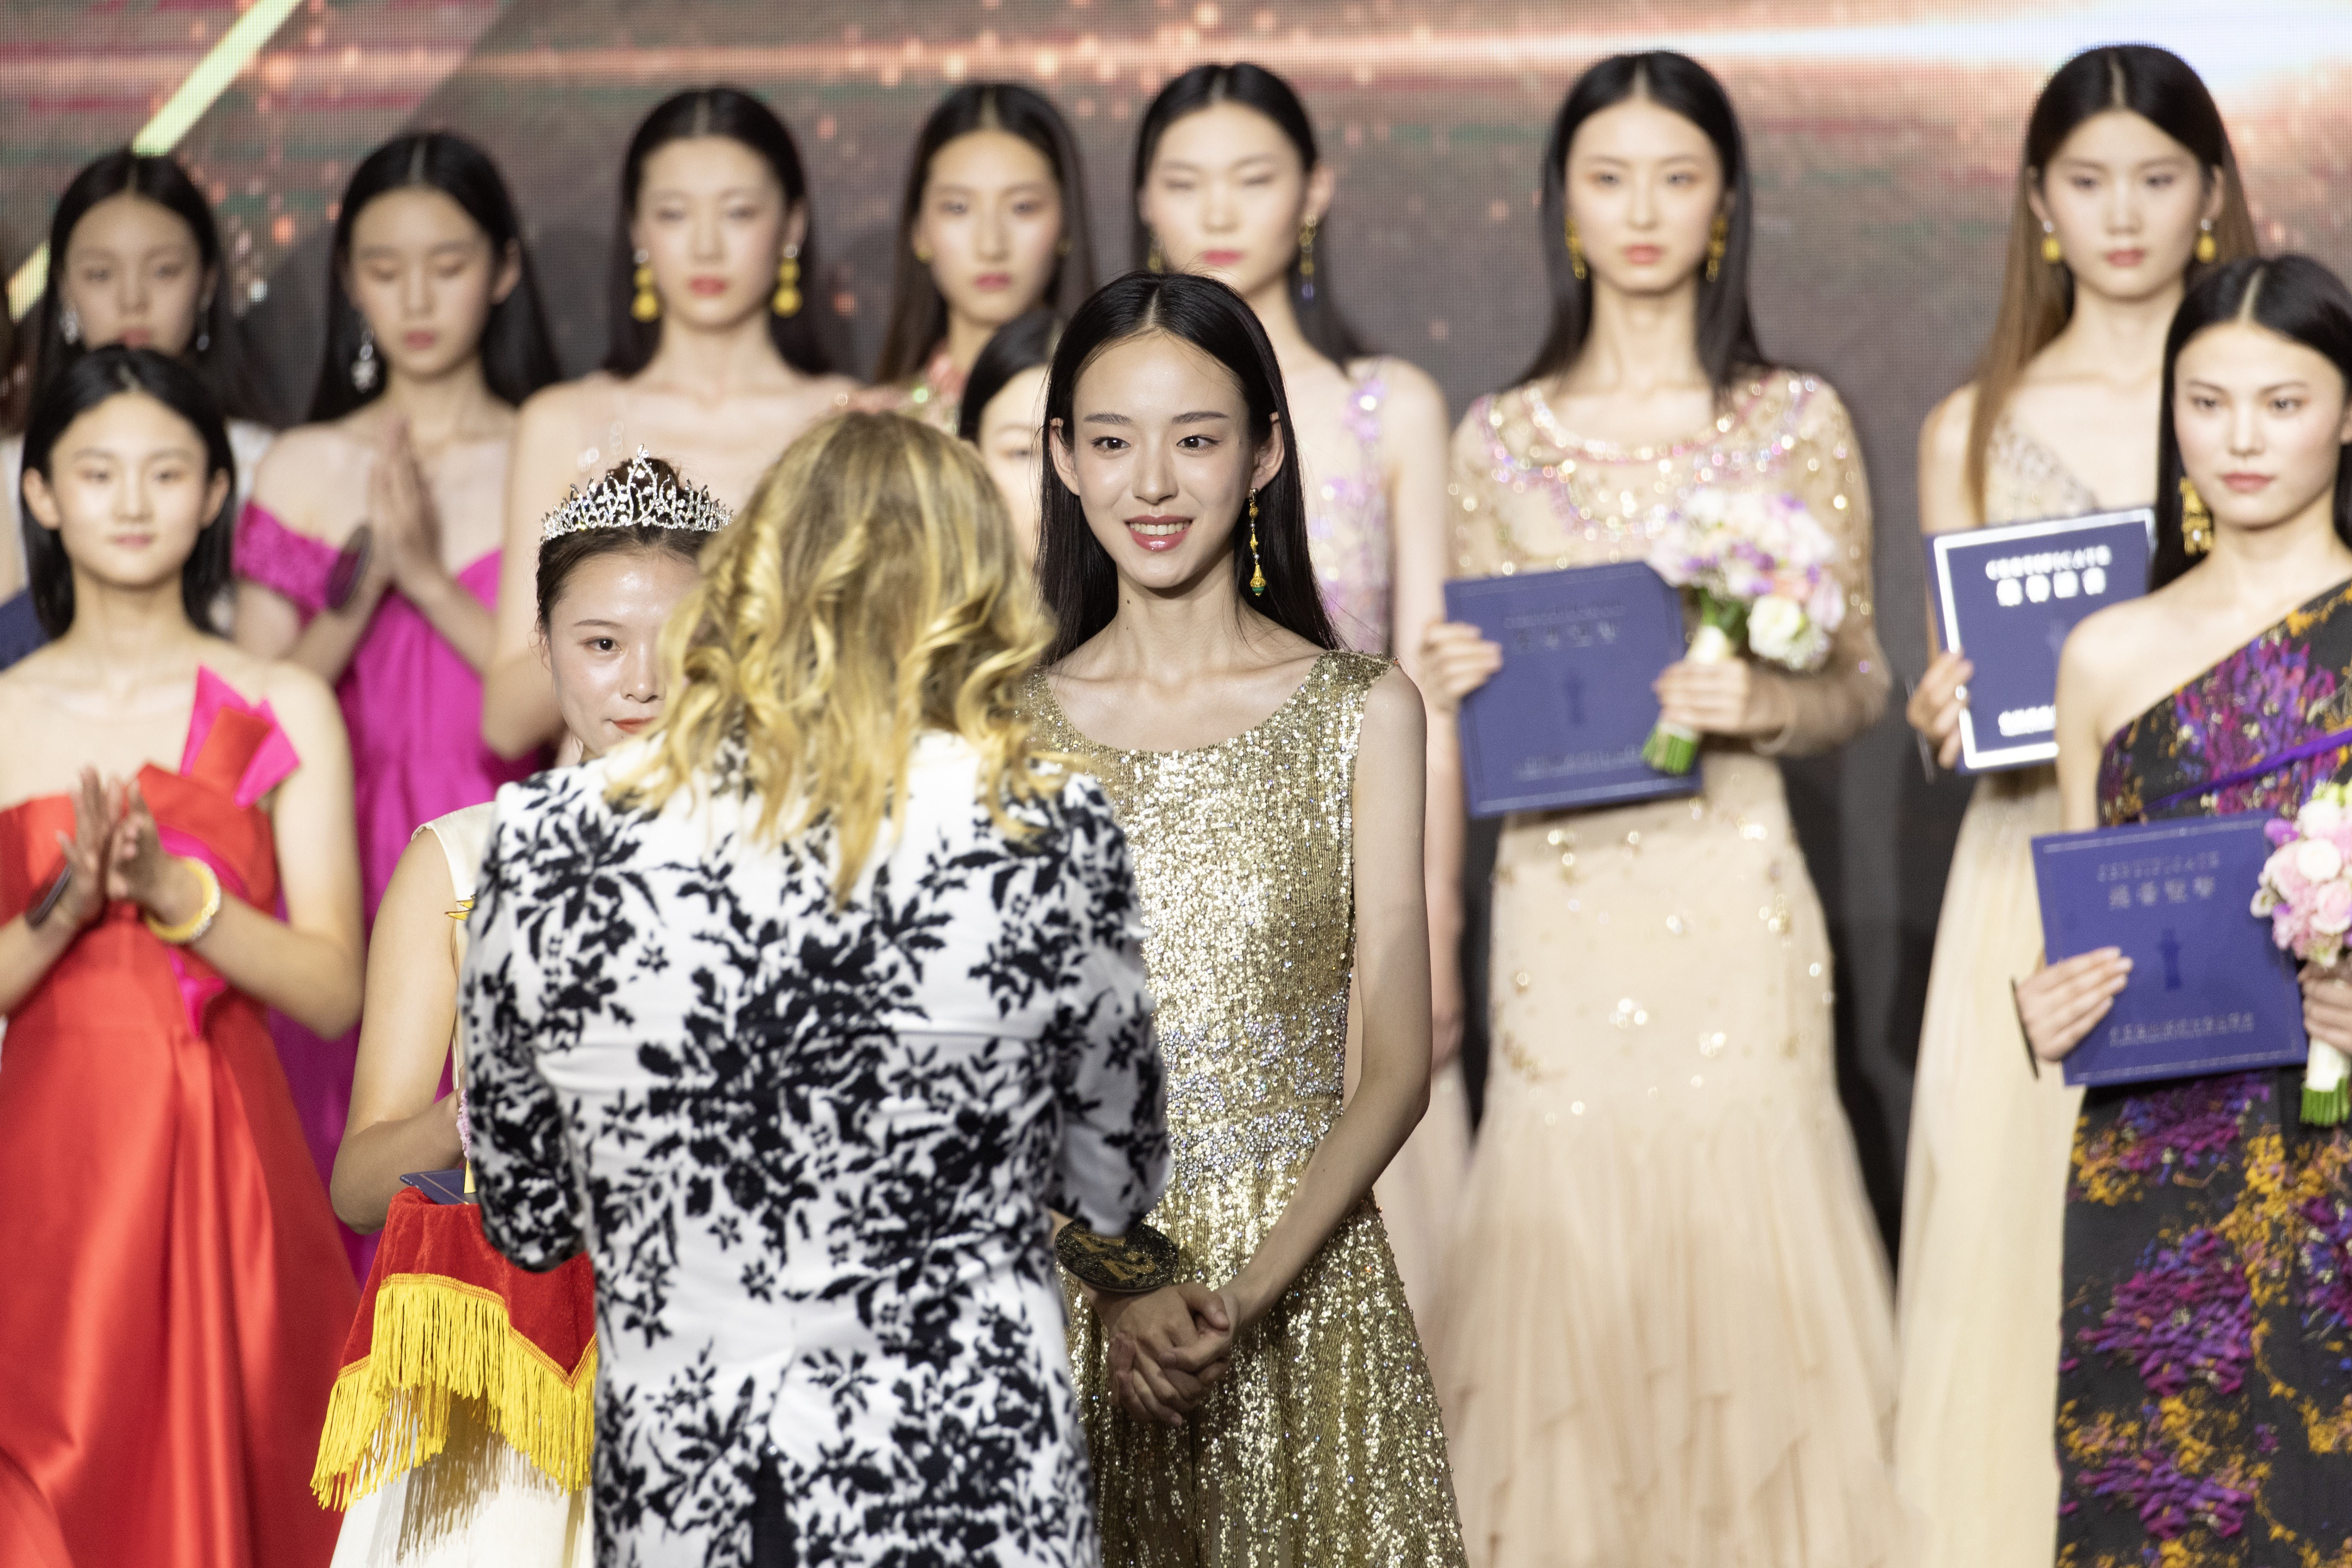 22号选手,18岁女孩代英明夺得第十四届中国超级模特大赛总决赛冠军